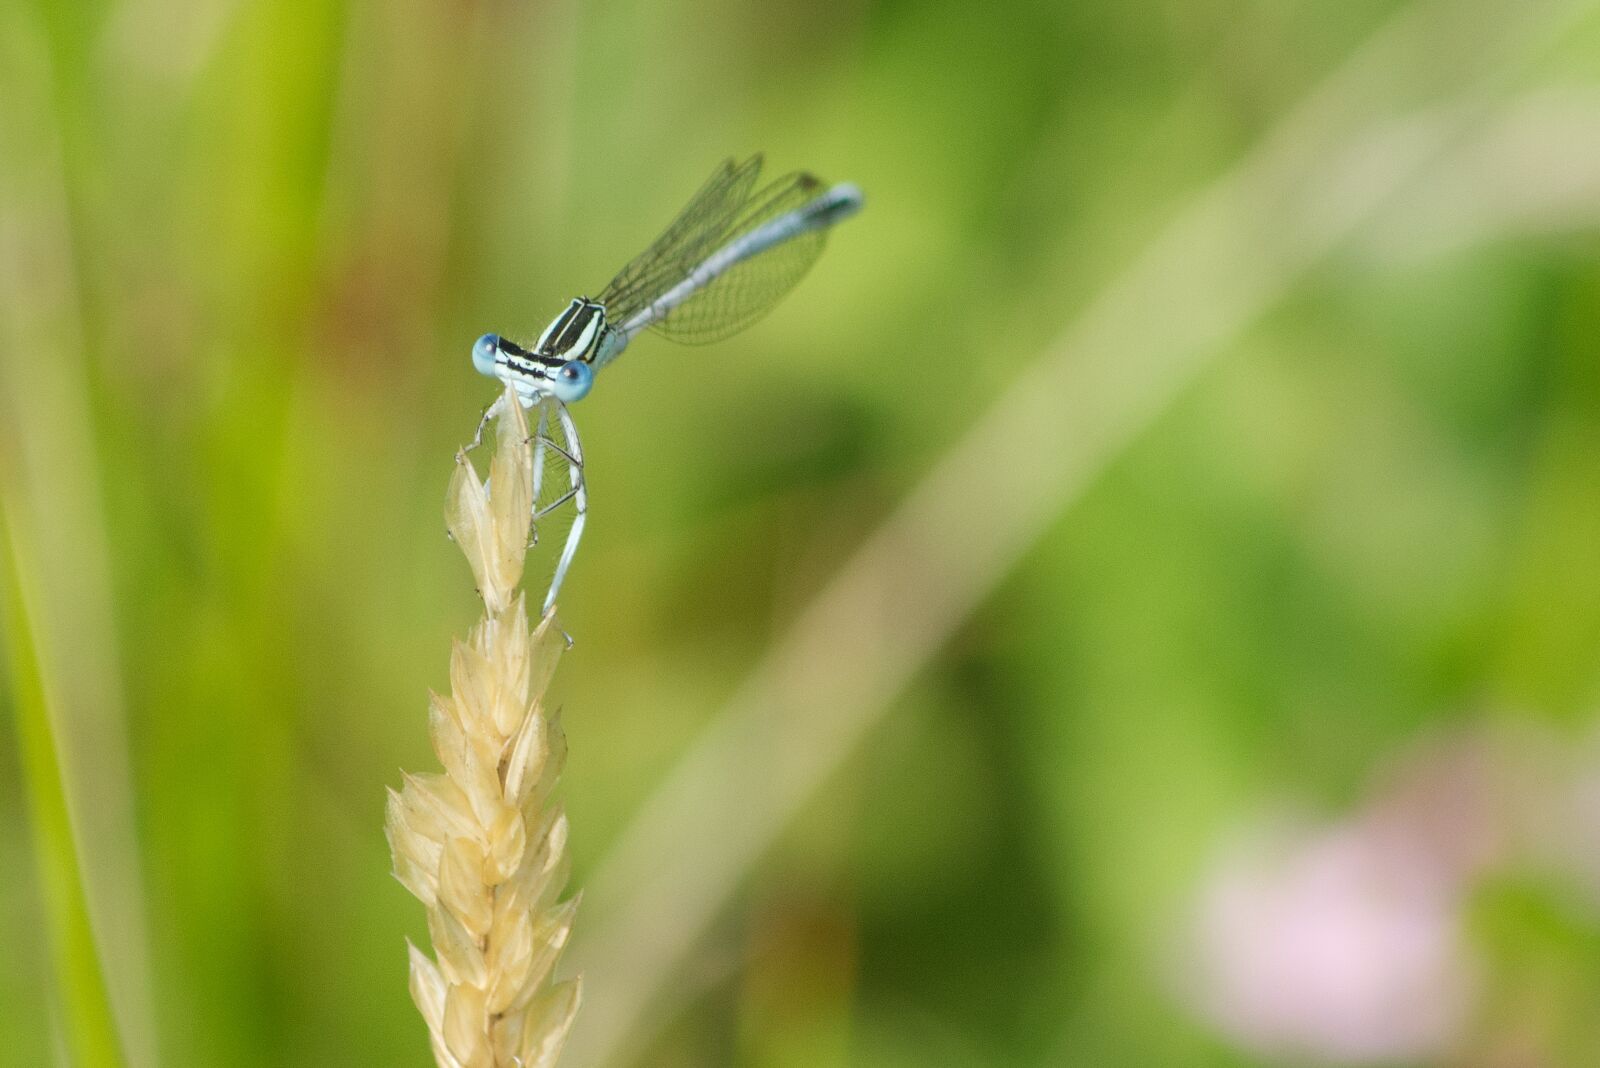 Pentax K-5 II sample photo. Blue breedscheenjuffer, dragonfly, nature photography